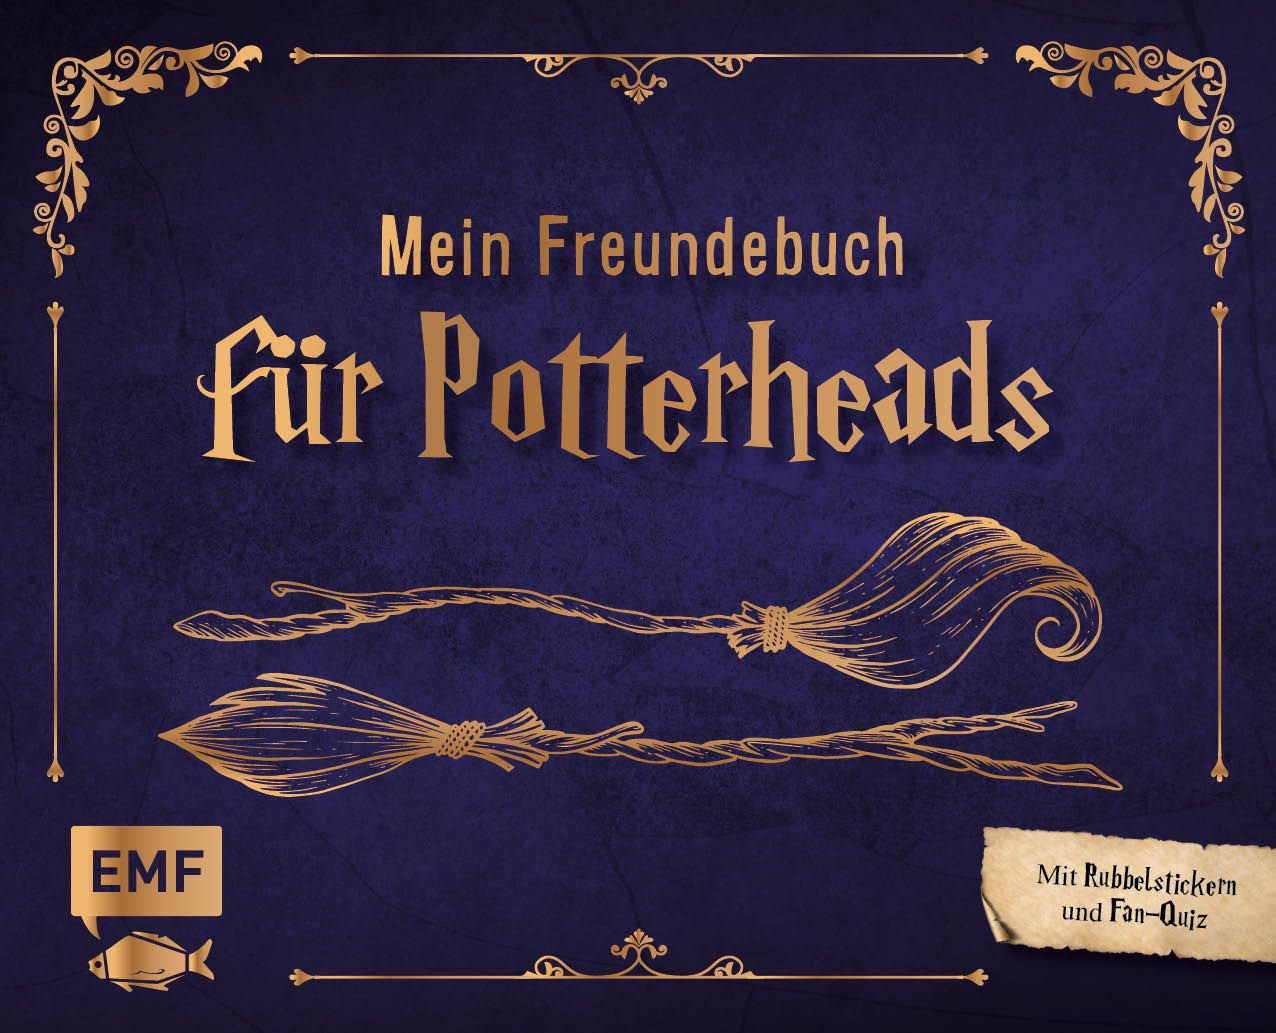 Harry Potter - Mein Freundebuch für Potterheads